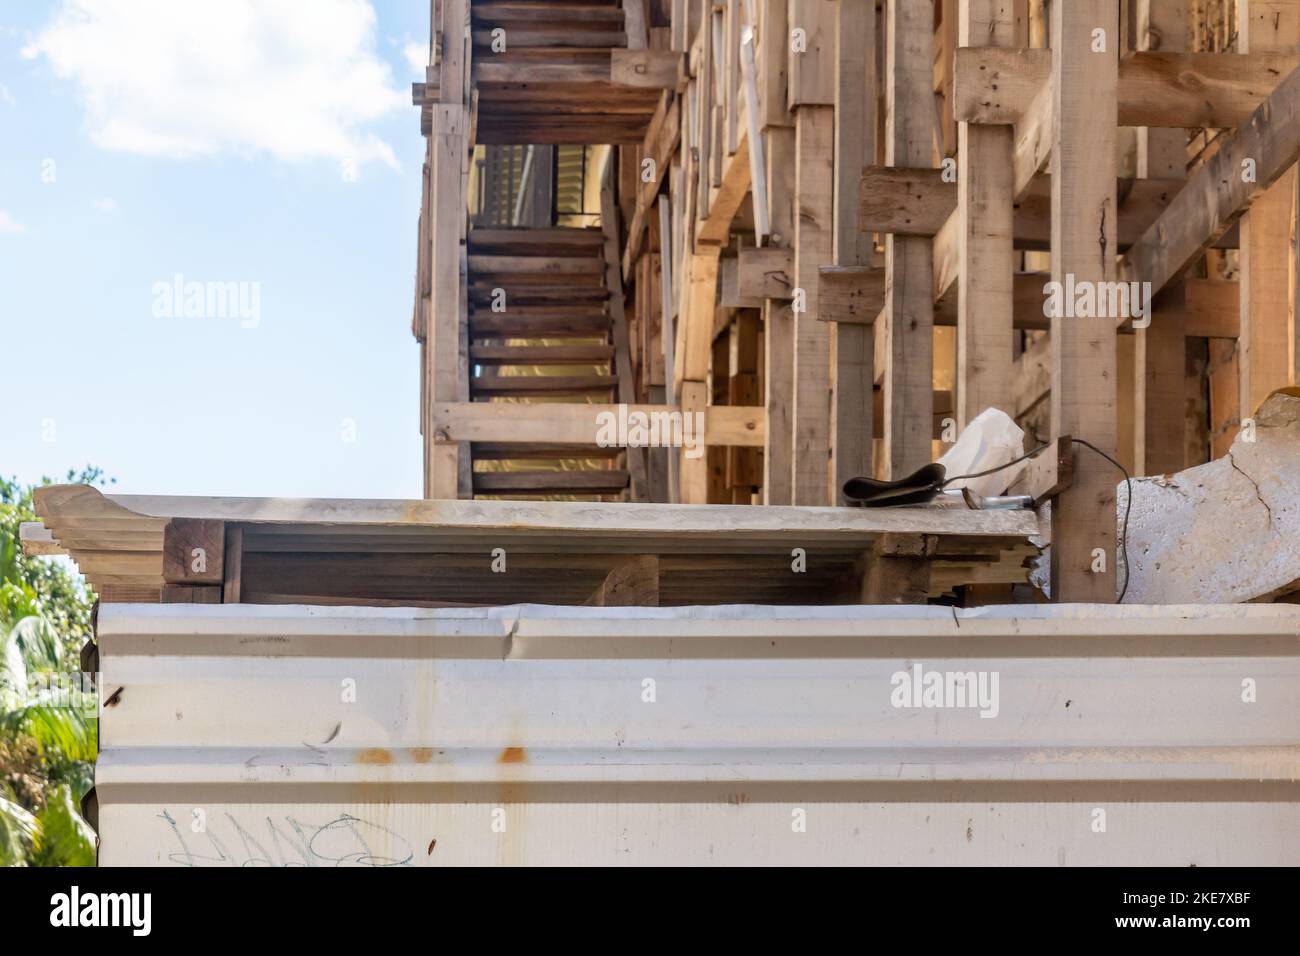 Estructuras de madera complejas o vigas de soporte en un edificio colapsado. Muchos inmuebles de la ciudad están en malas condiciones estructurales. Foto de stock